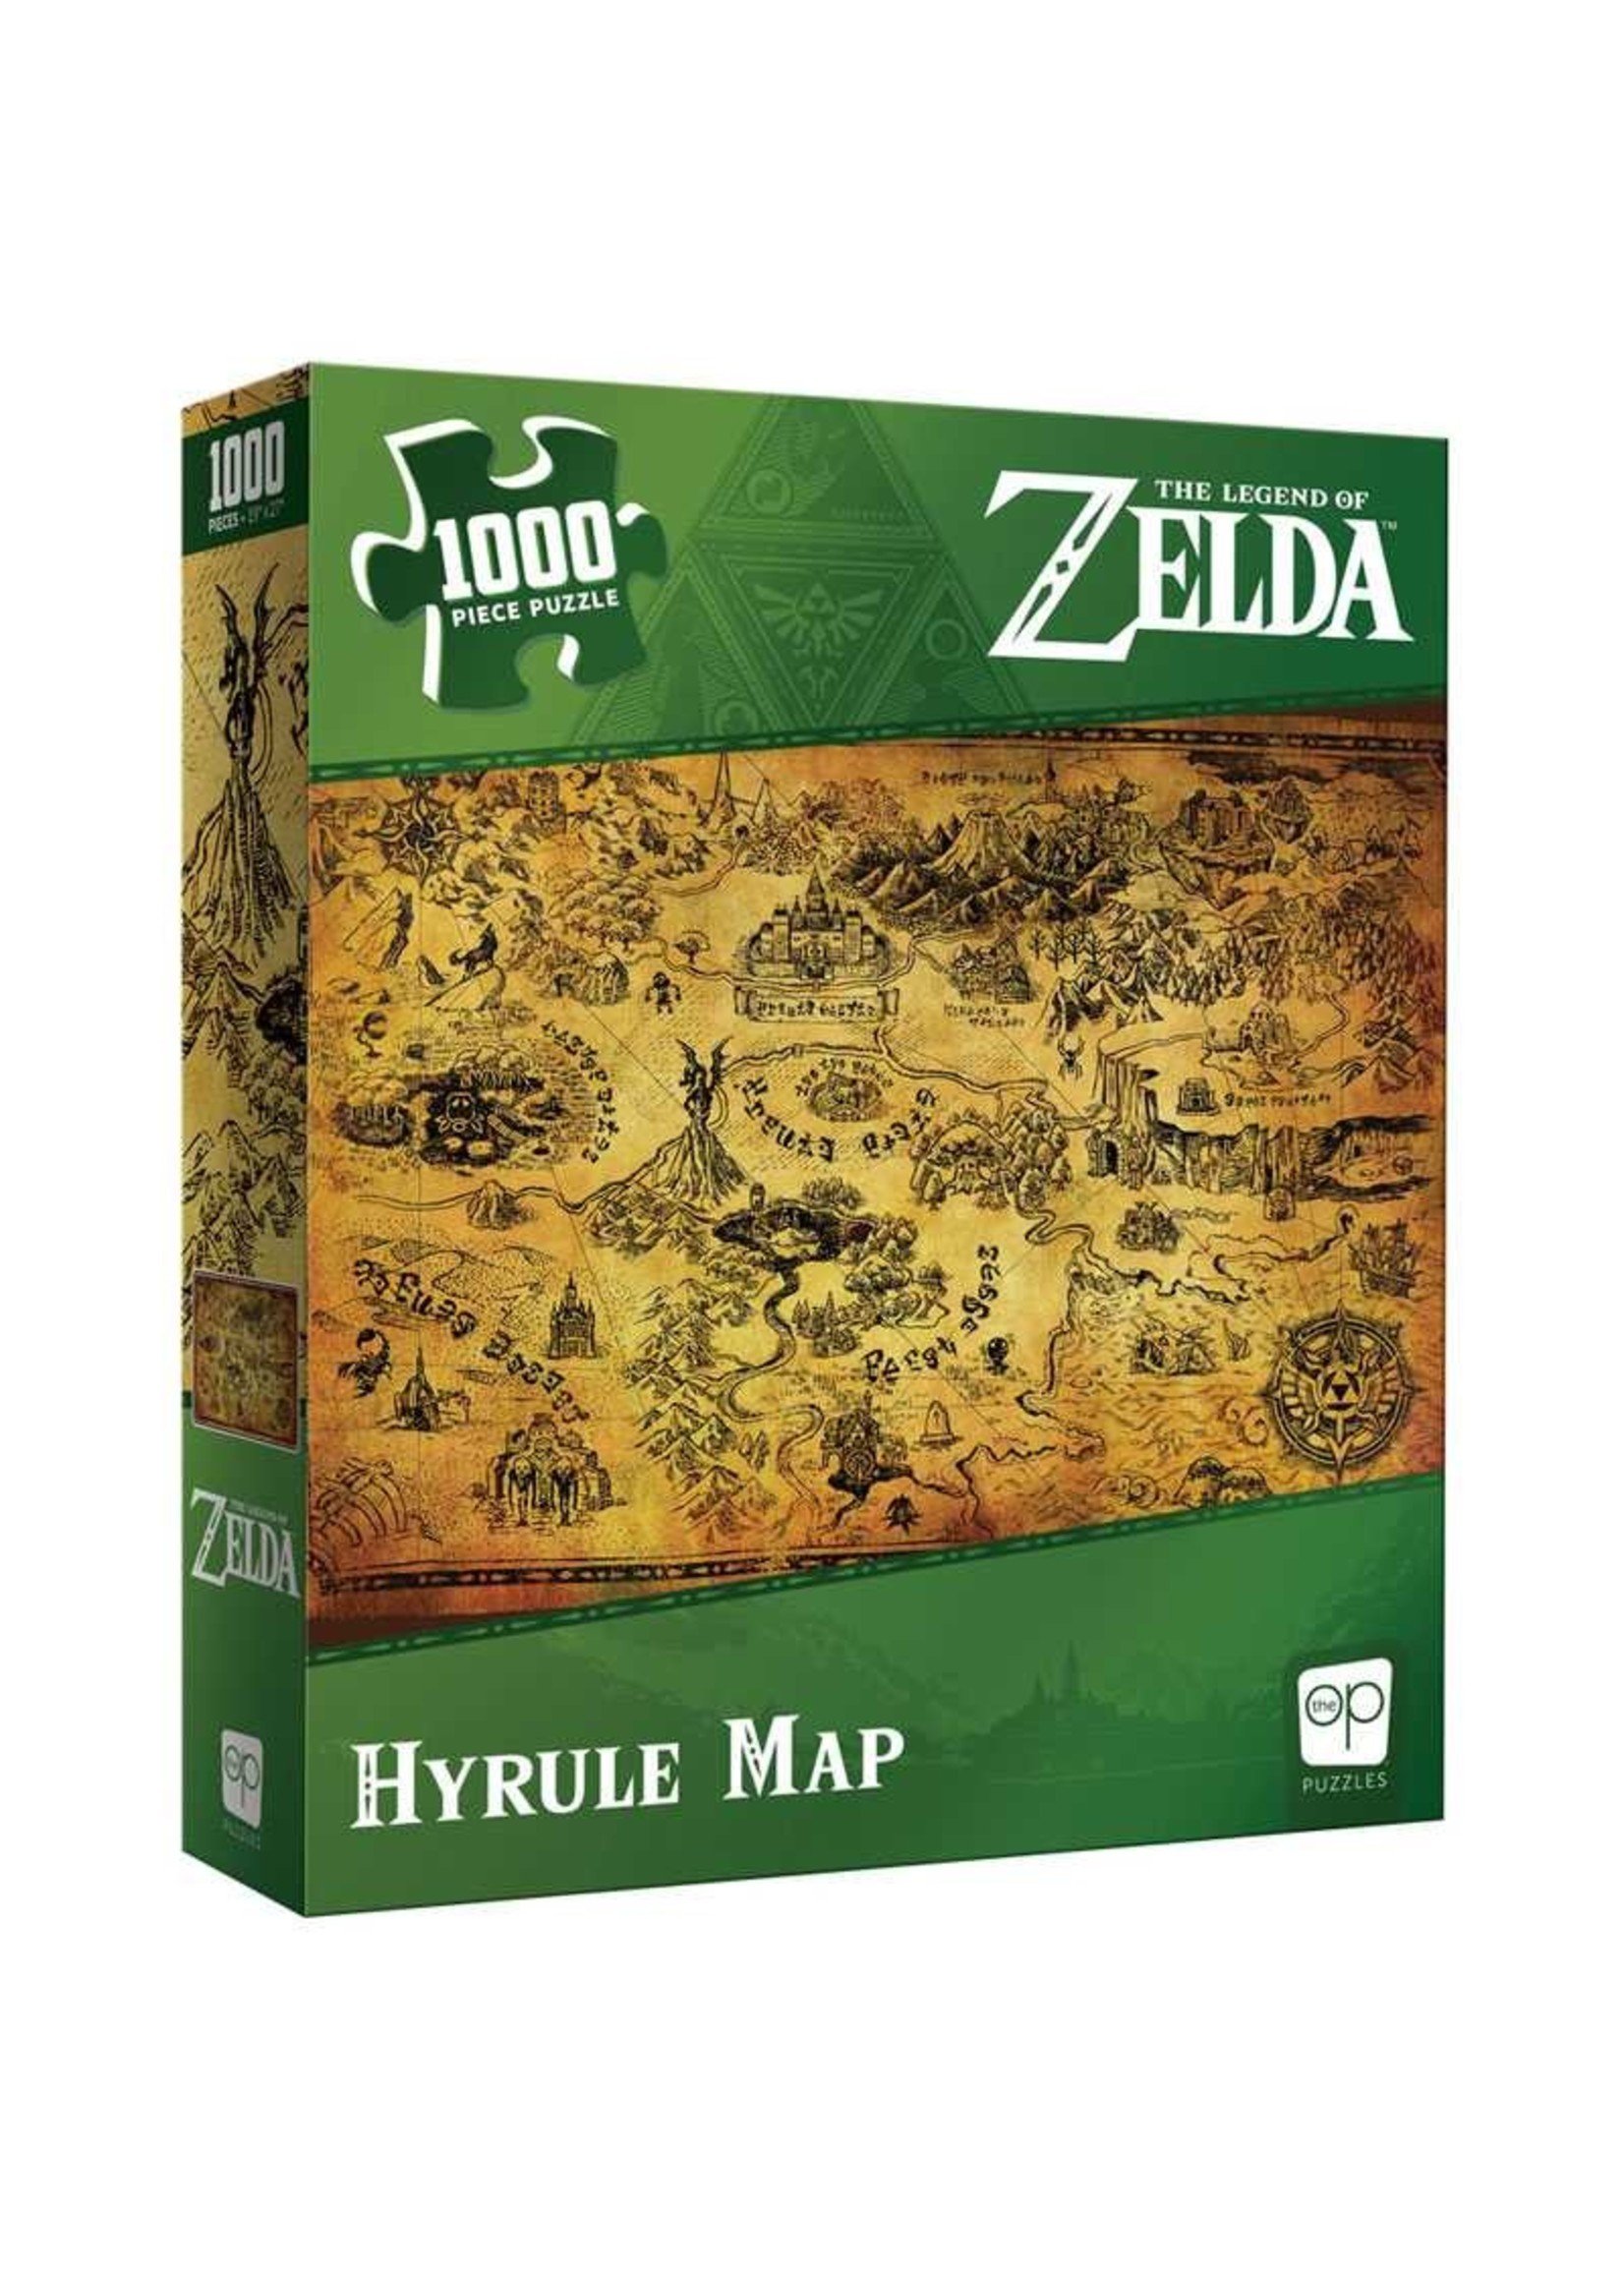 ZELDA Hyrule Map